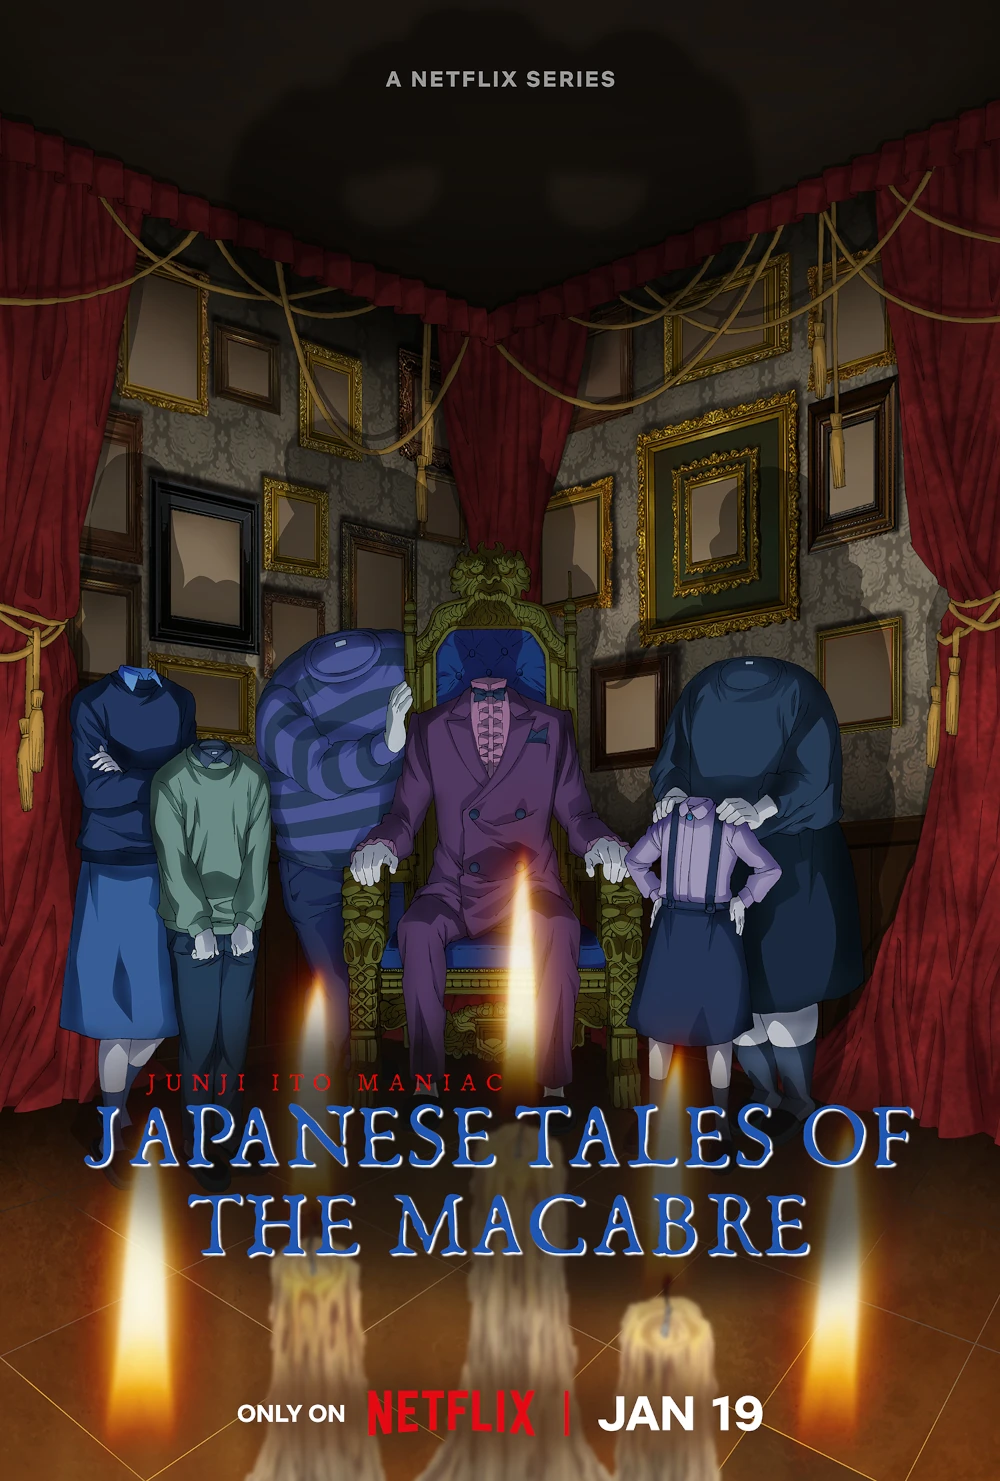 Junji Ito Maniac: Japanese Tales of the Macabre Filmstill